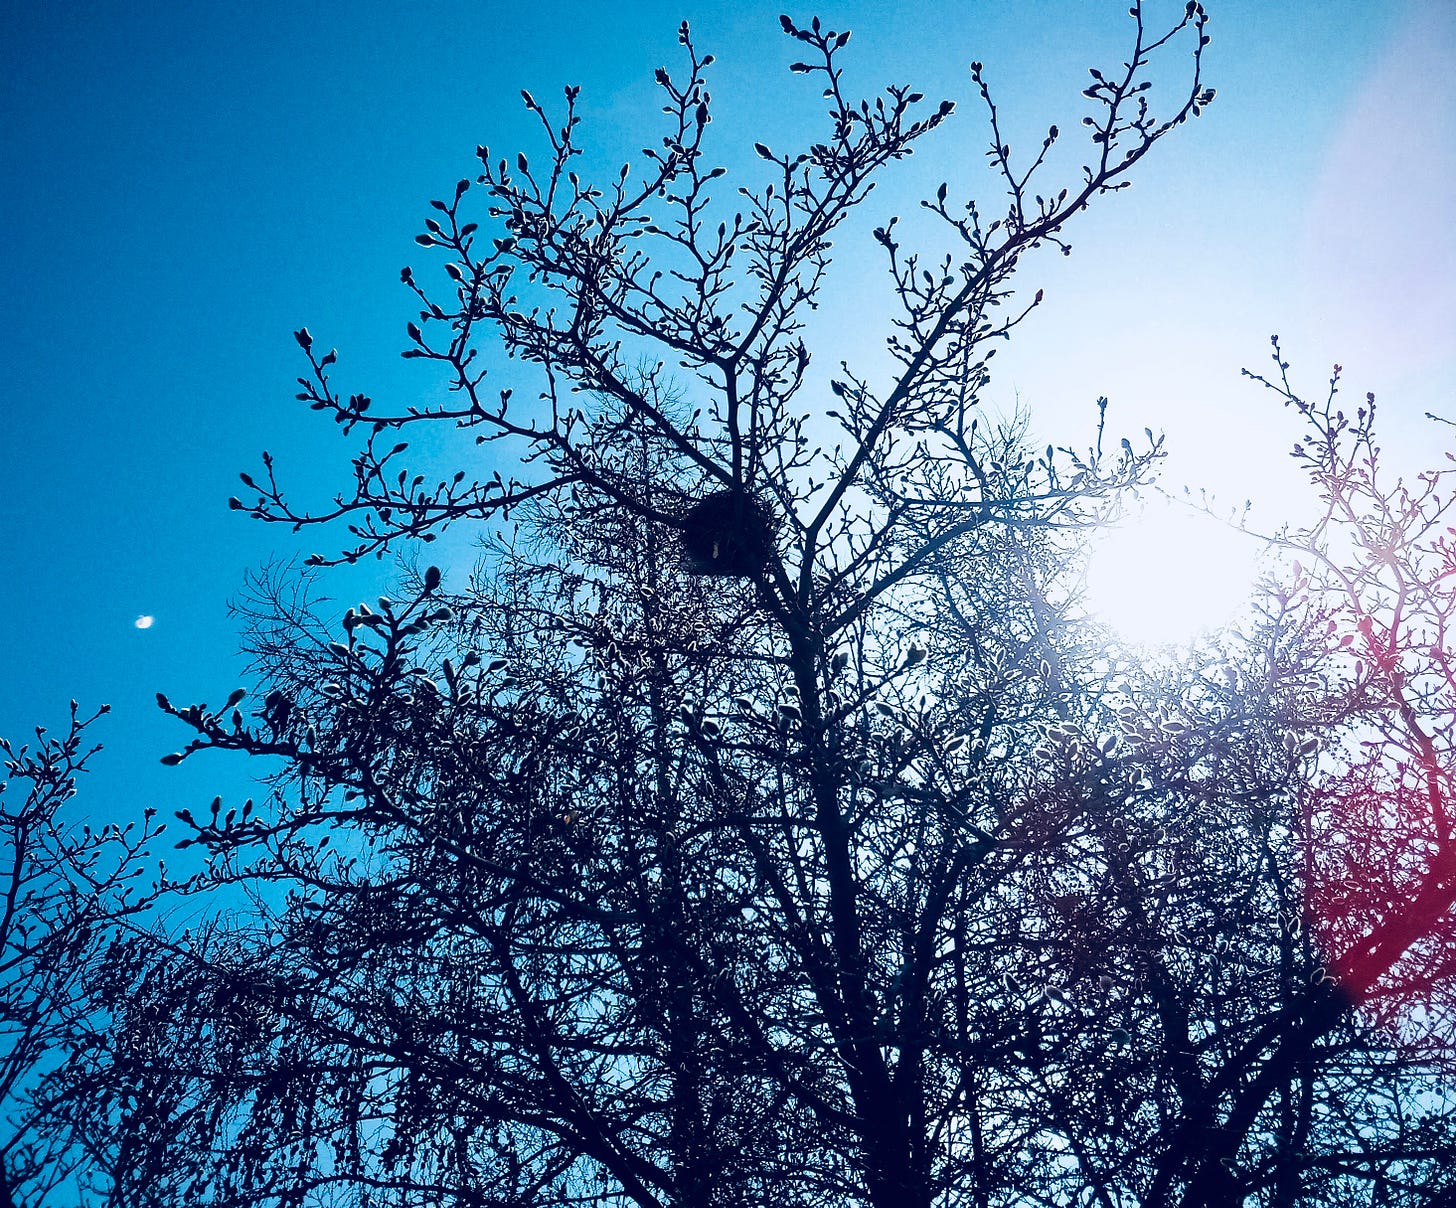 Birds' nest in a tree backed by blue sky